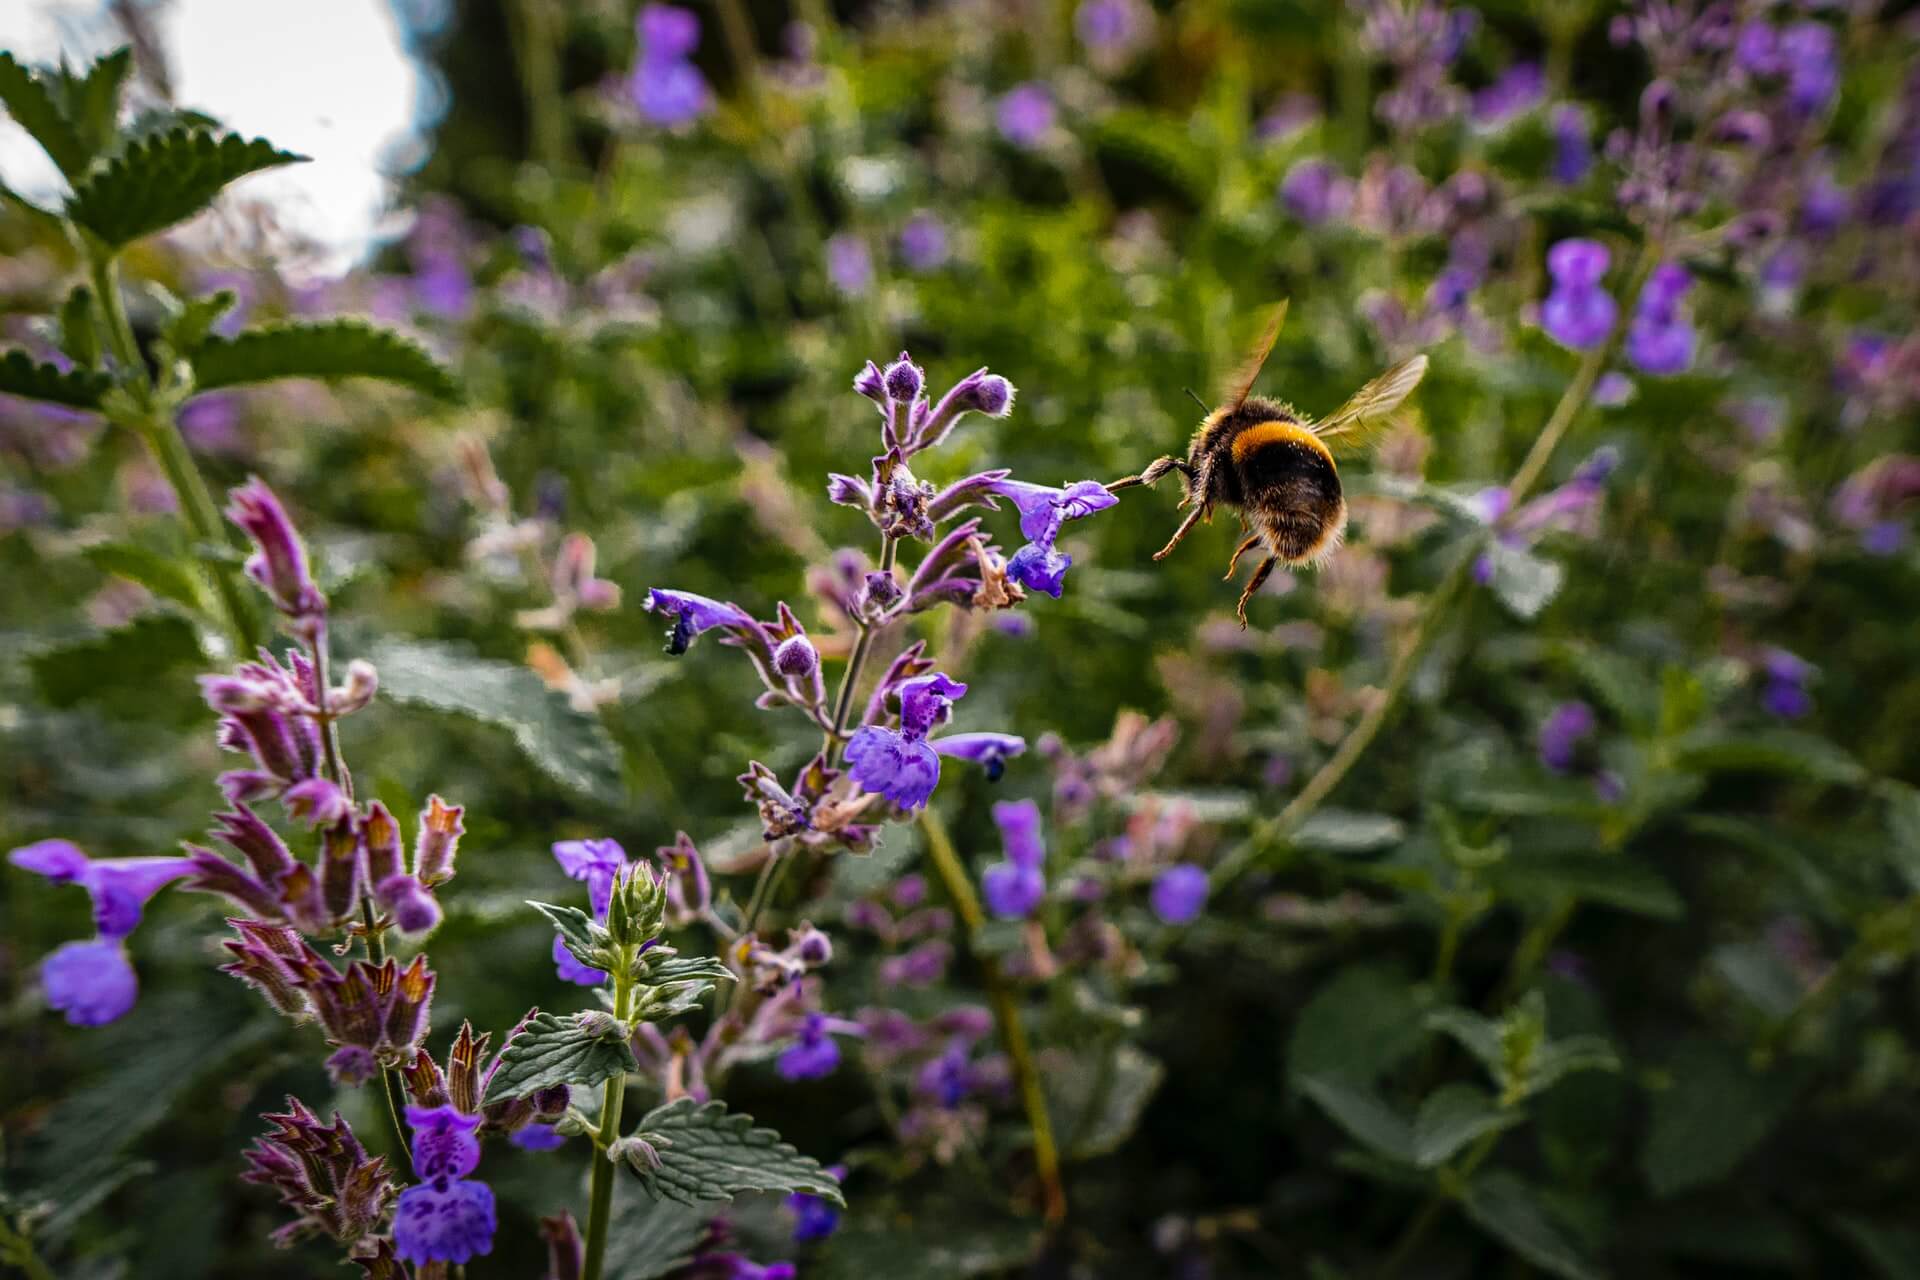 https://reviveabee.com/wp-content/uploads/2022/05/bumblebee-collecting-pollen.jpg